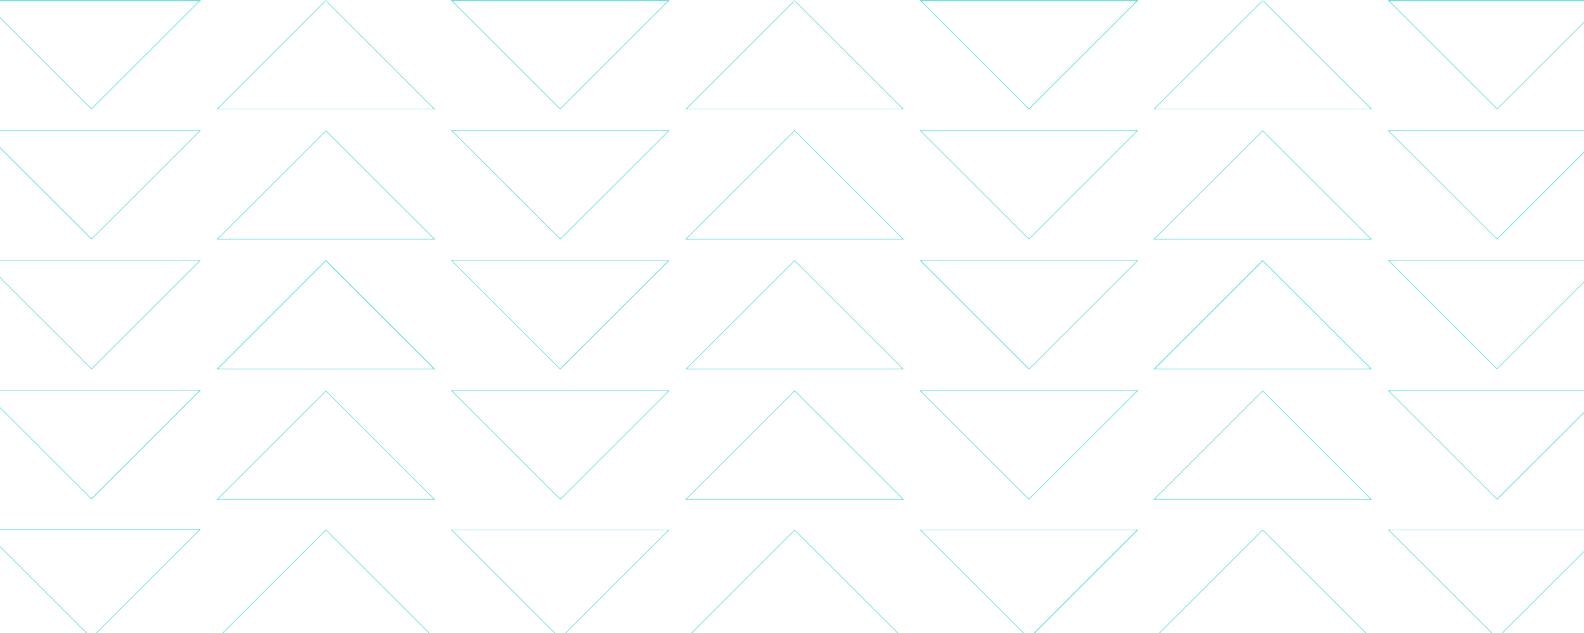 繊細な三角形のパターンを形成する細い青い線を示す図